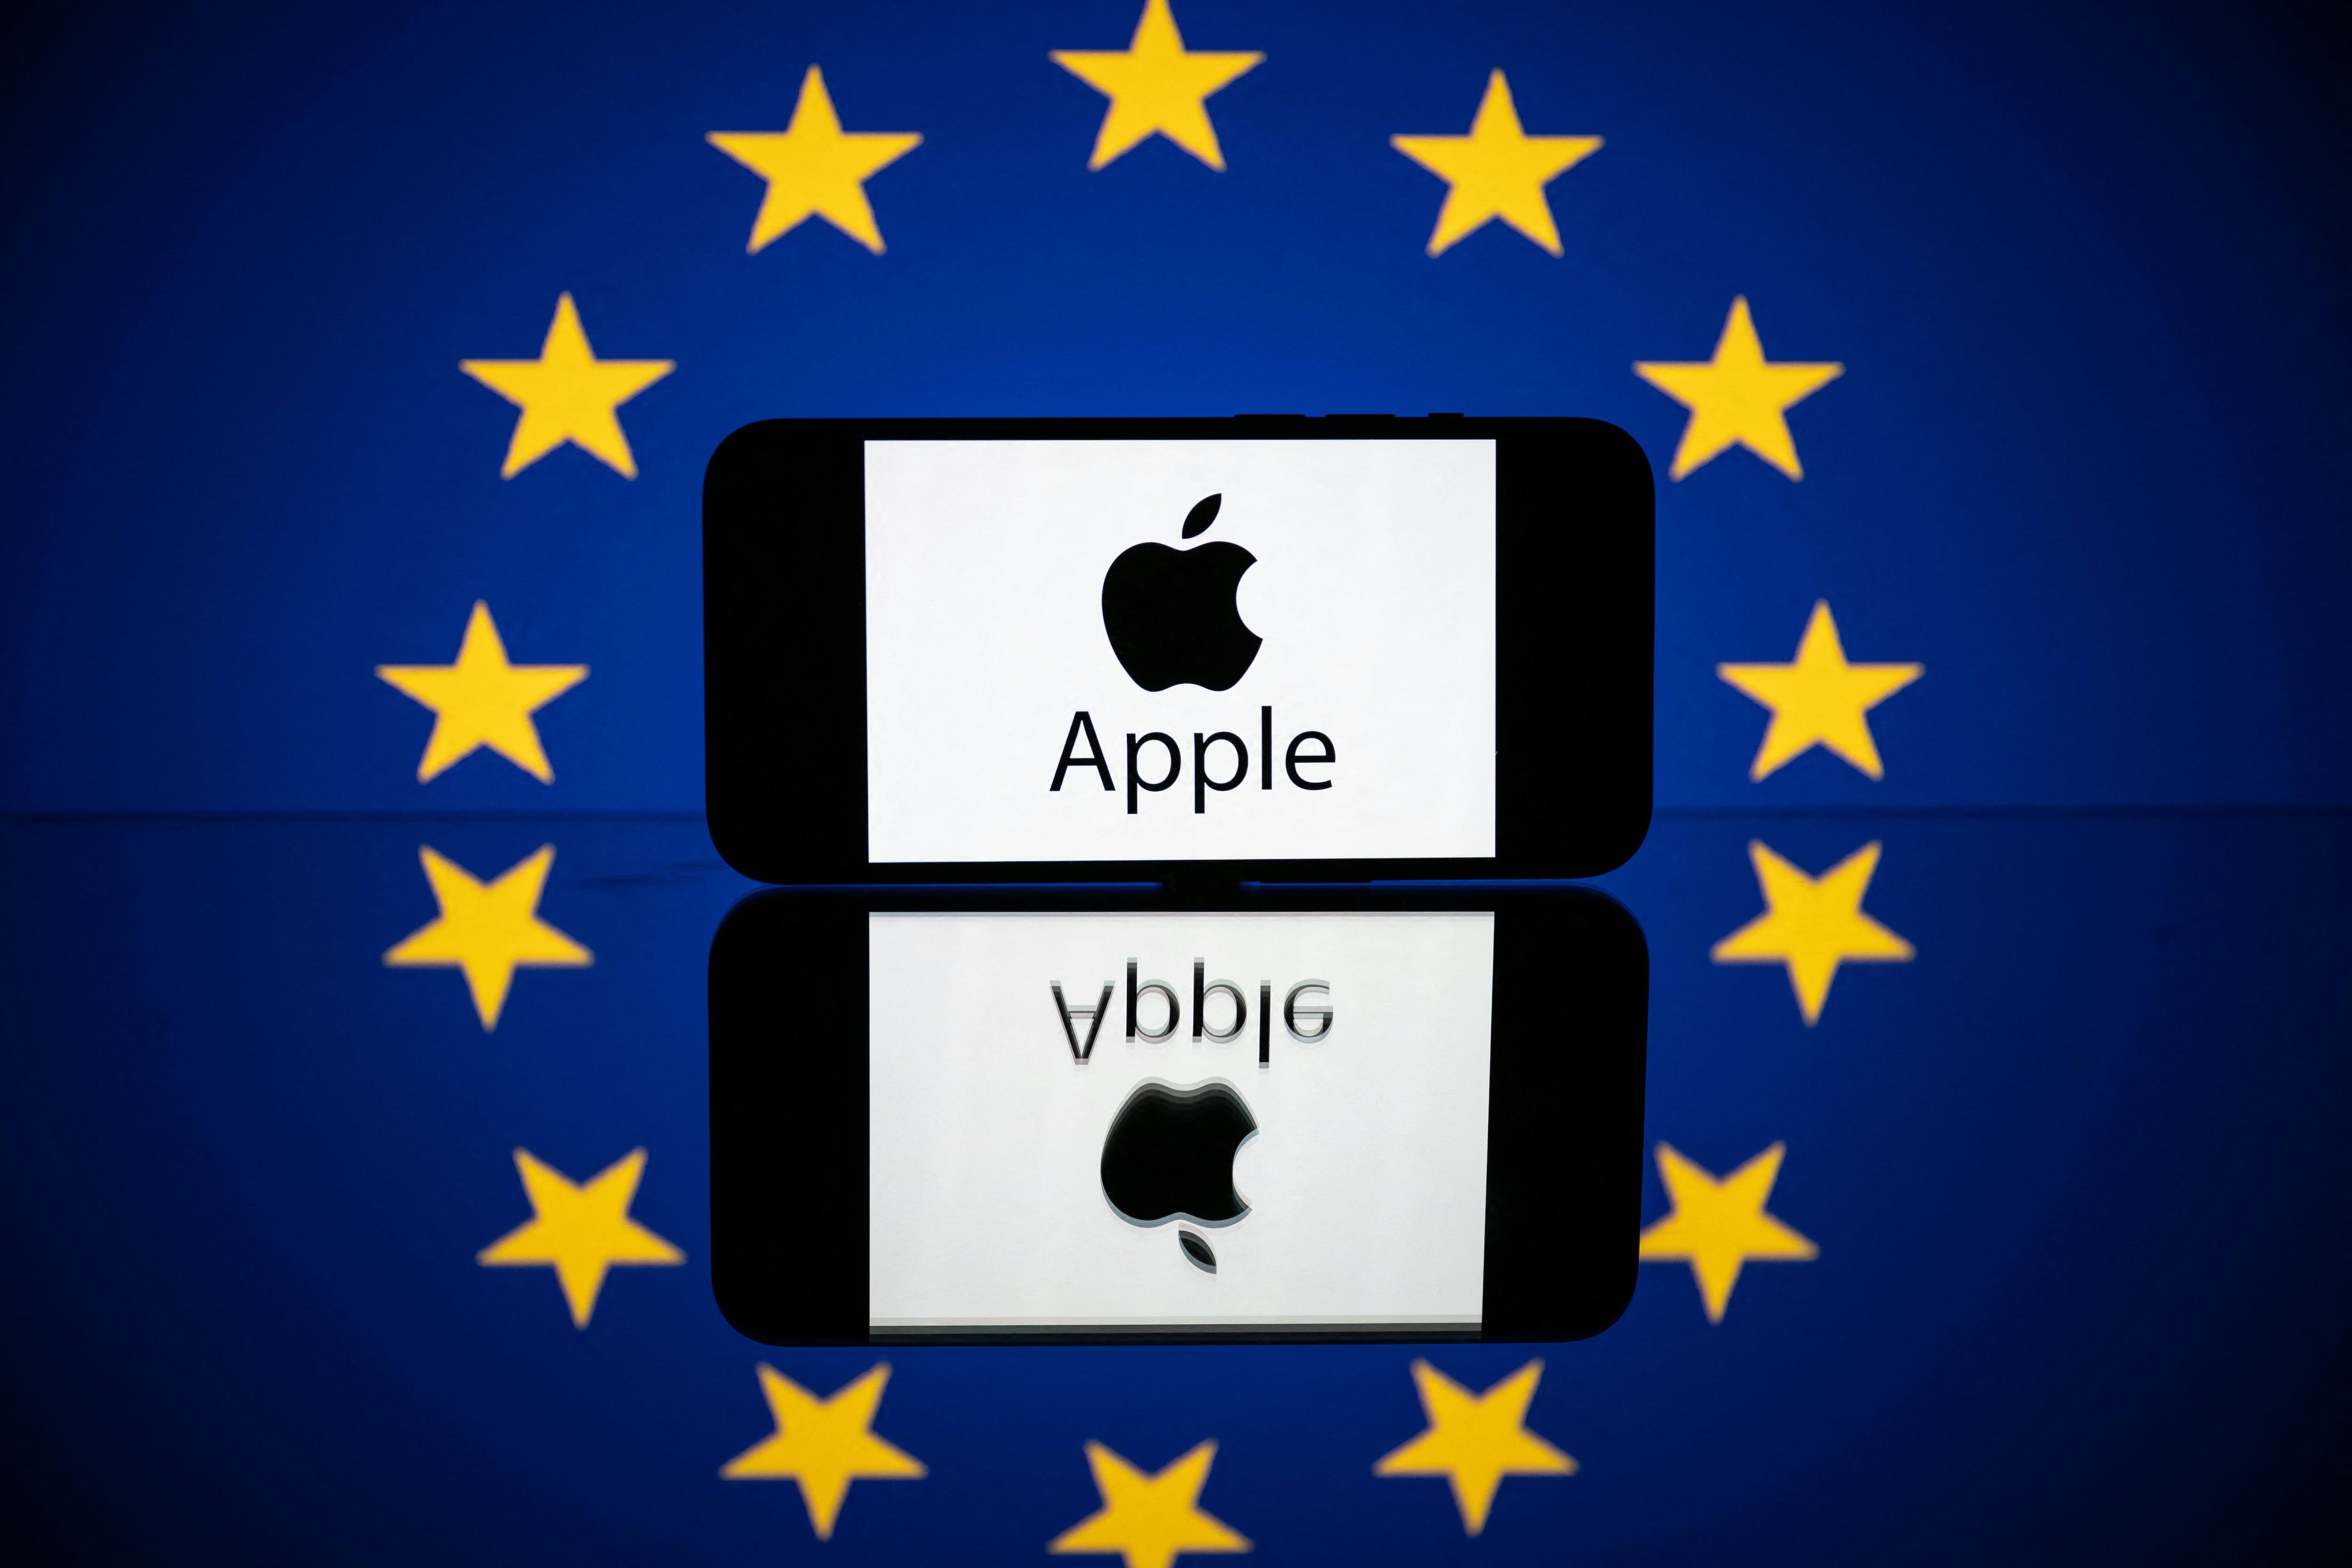 La Comisión Europea determinó, de forma preliminar, que la tienda de aplicaciones “App Store”, de Apple, no cumple con las normas de competencia del bloque. Archivo: